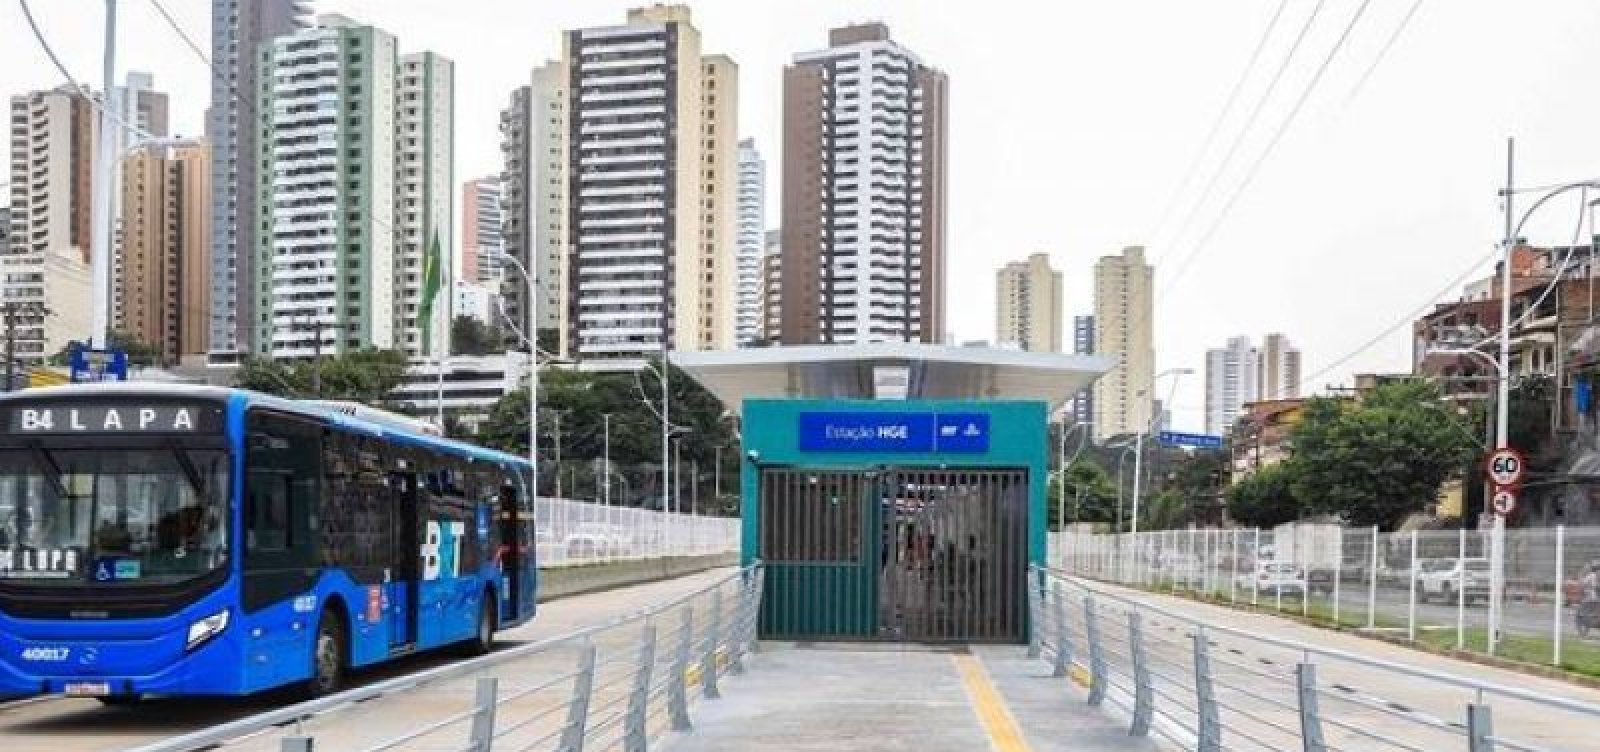 Nova estação de BRT Vasco da Gama começa a operar neste sábado em Salvador 